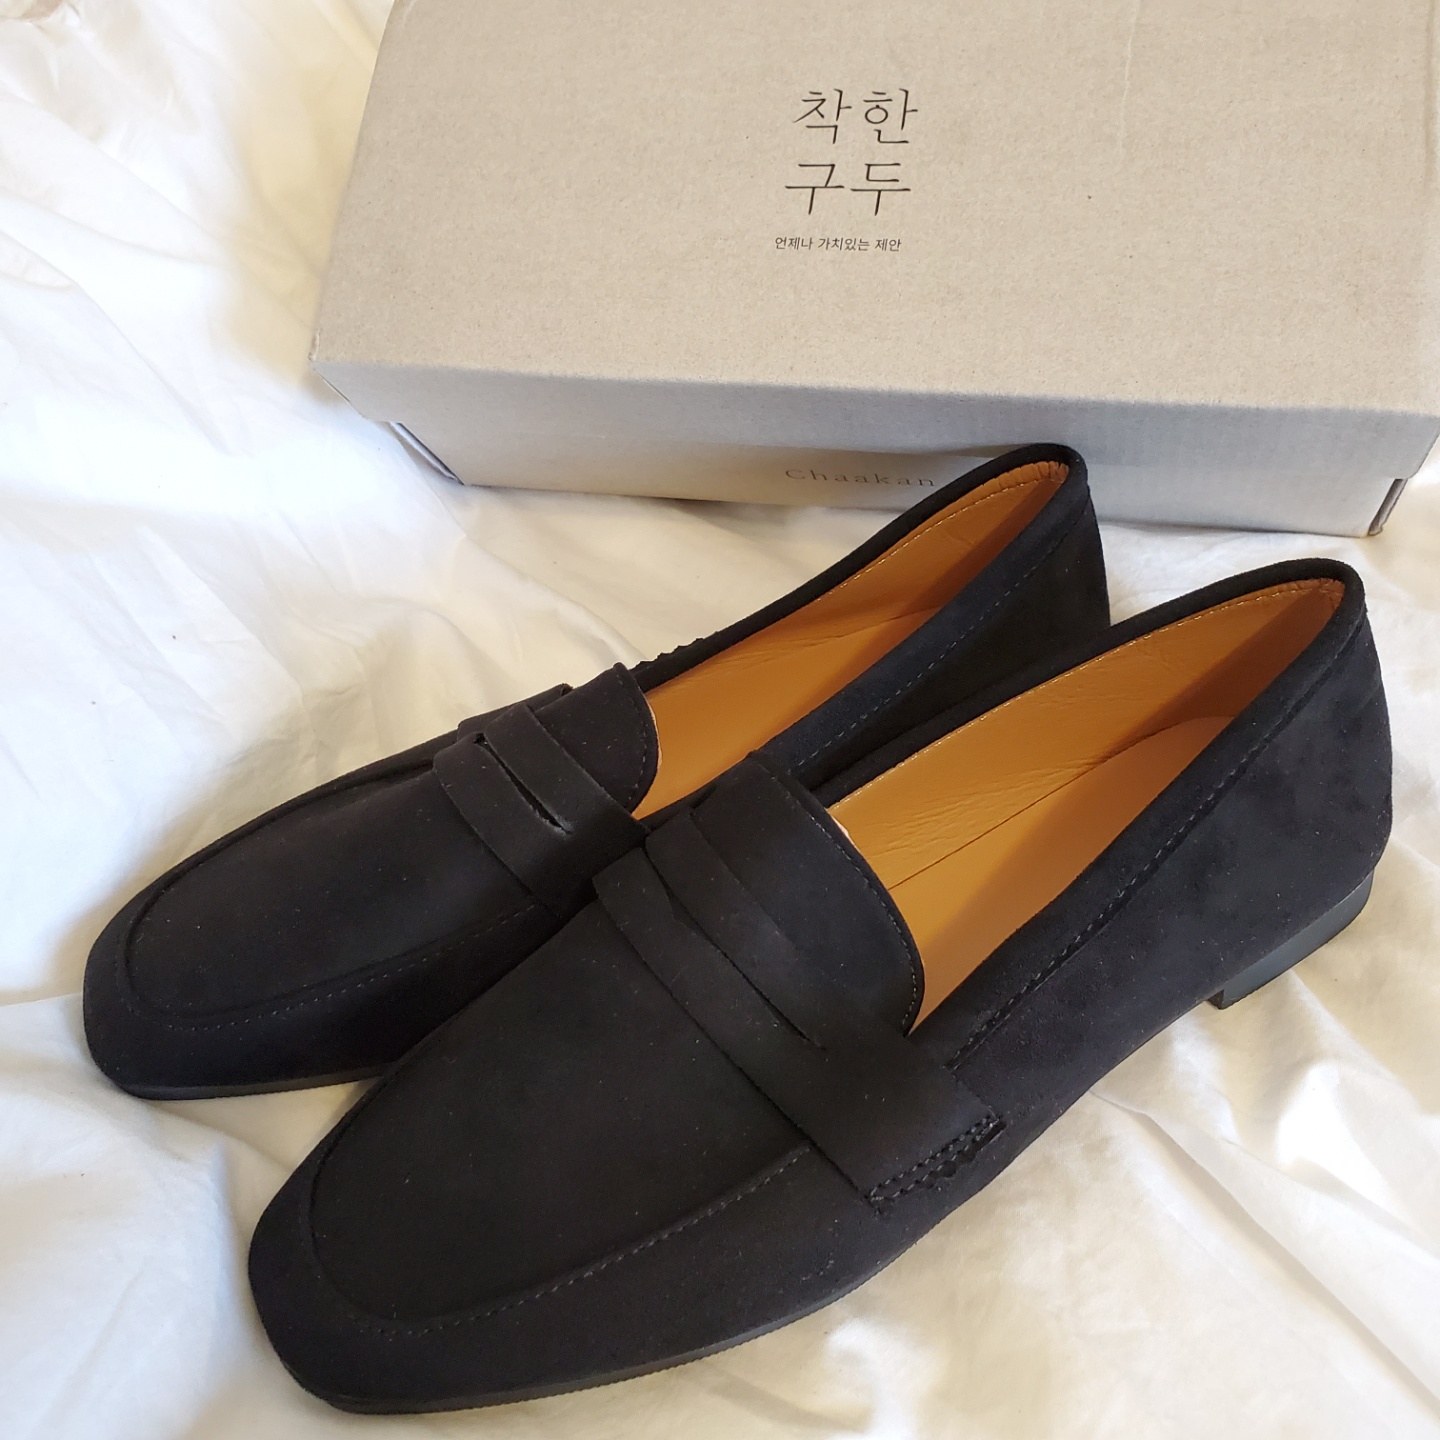 おしゃれで安い 韓国靴通販 チャカン靴 レビュー 韓国情報まとめサイト Tip ティップ